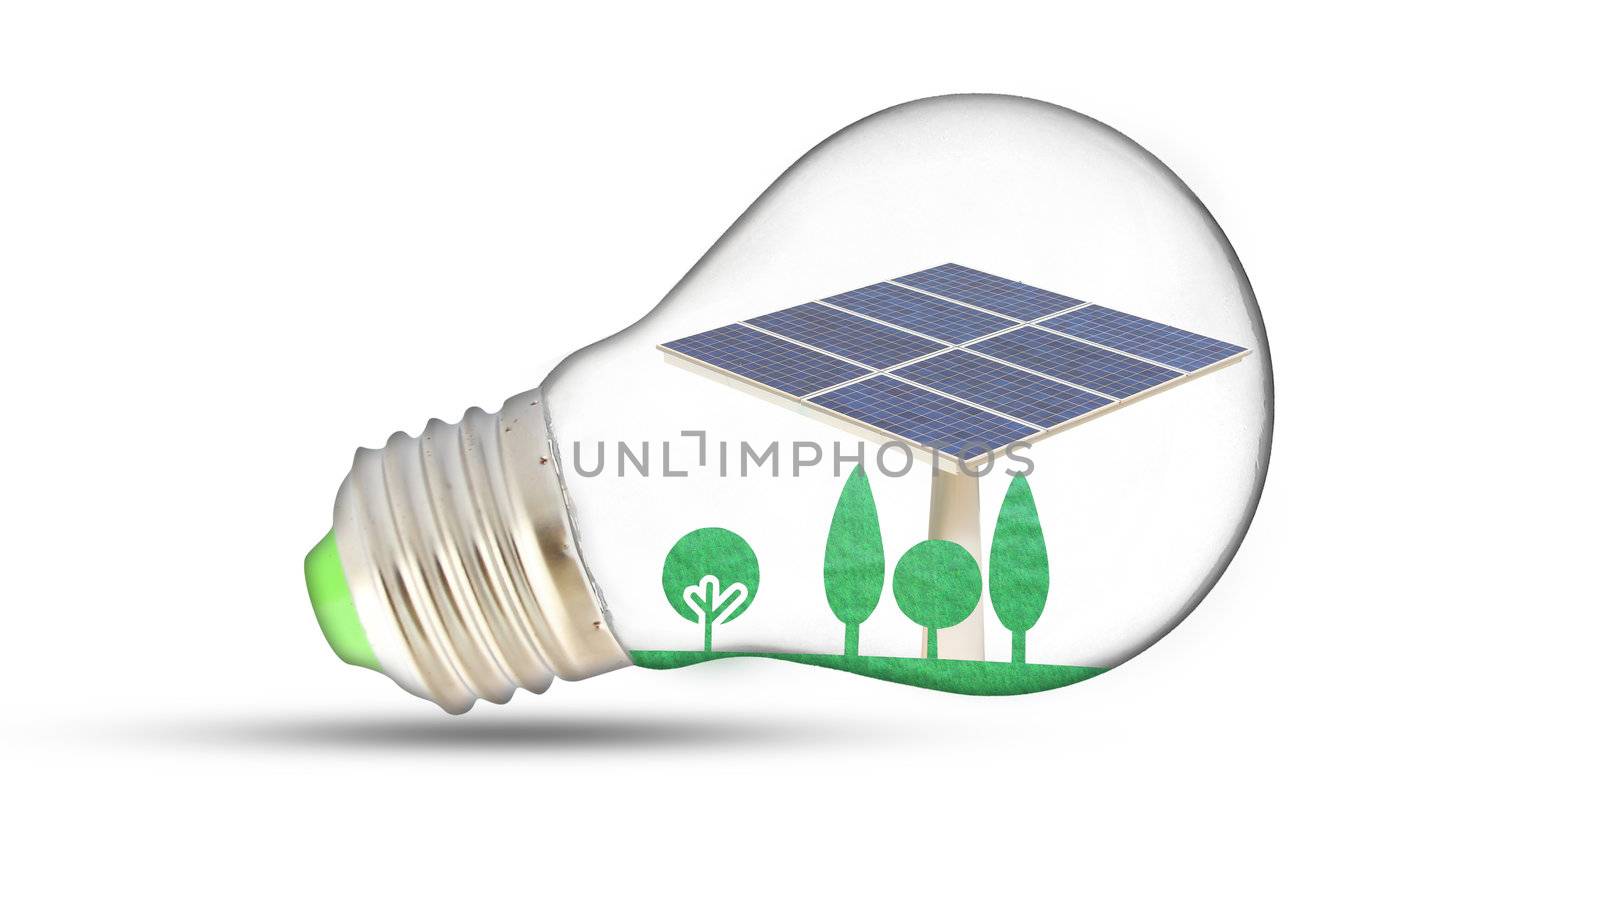 solar cells on green plant inside light bulb